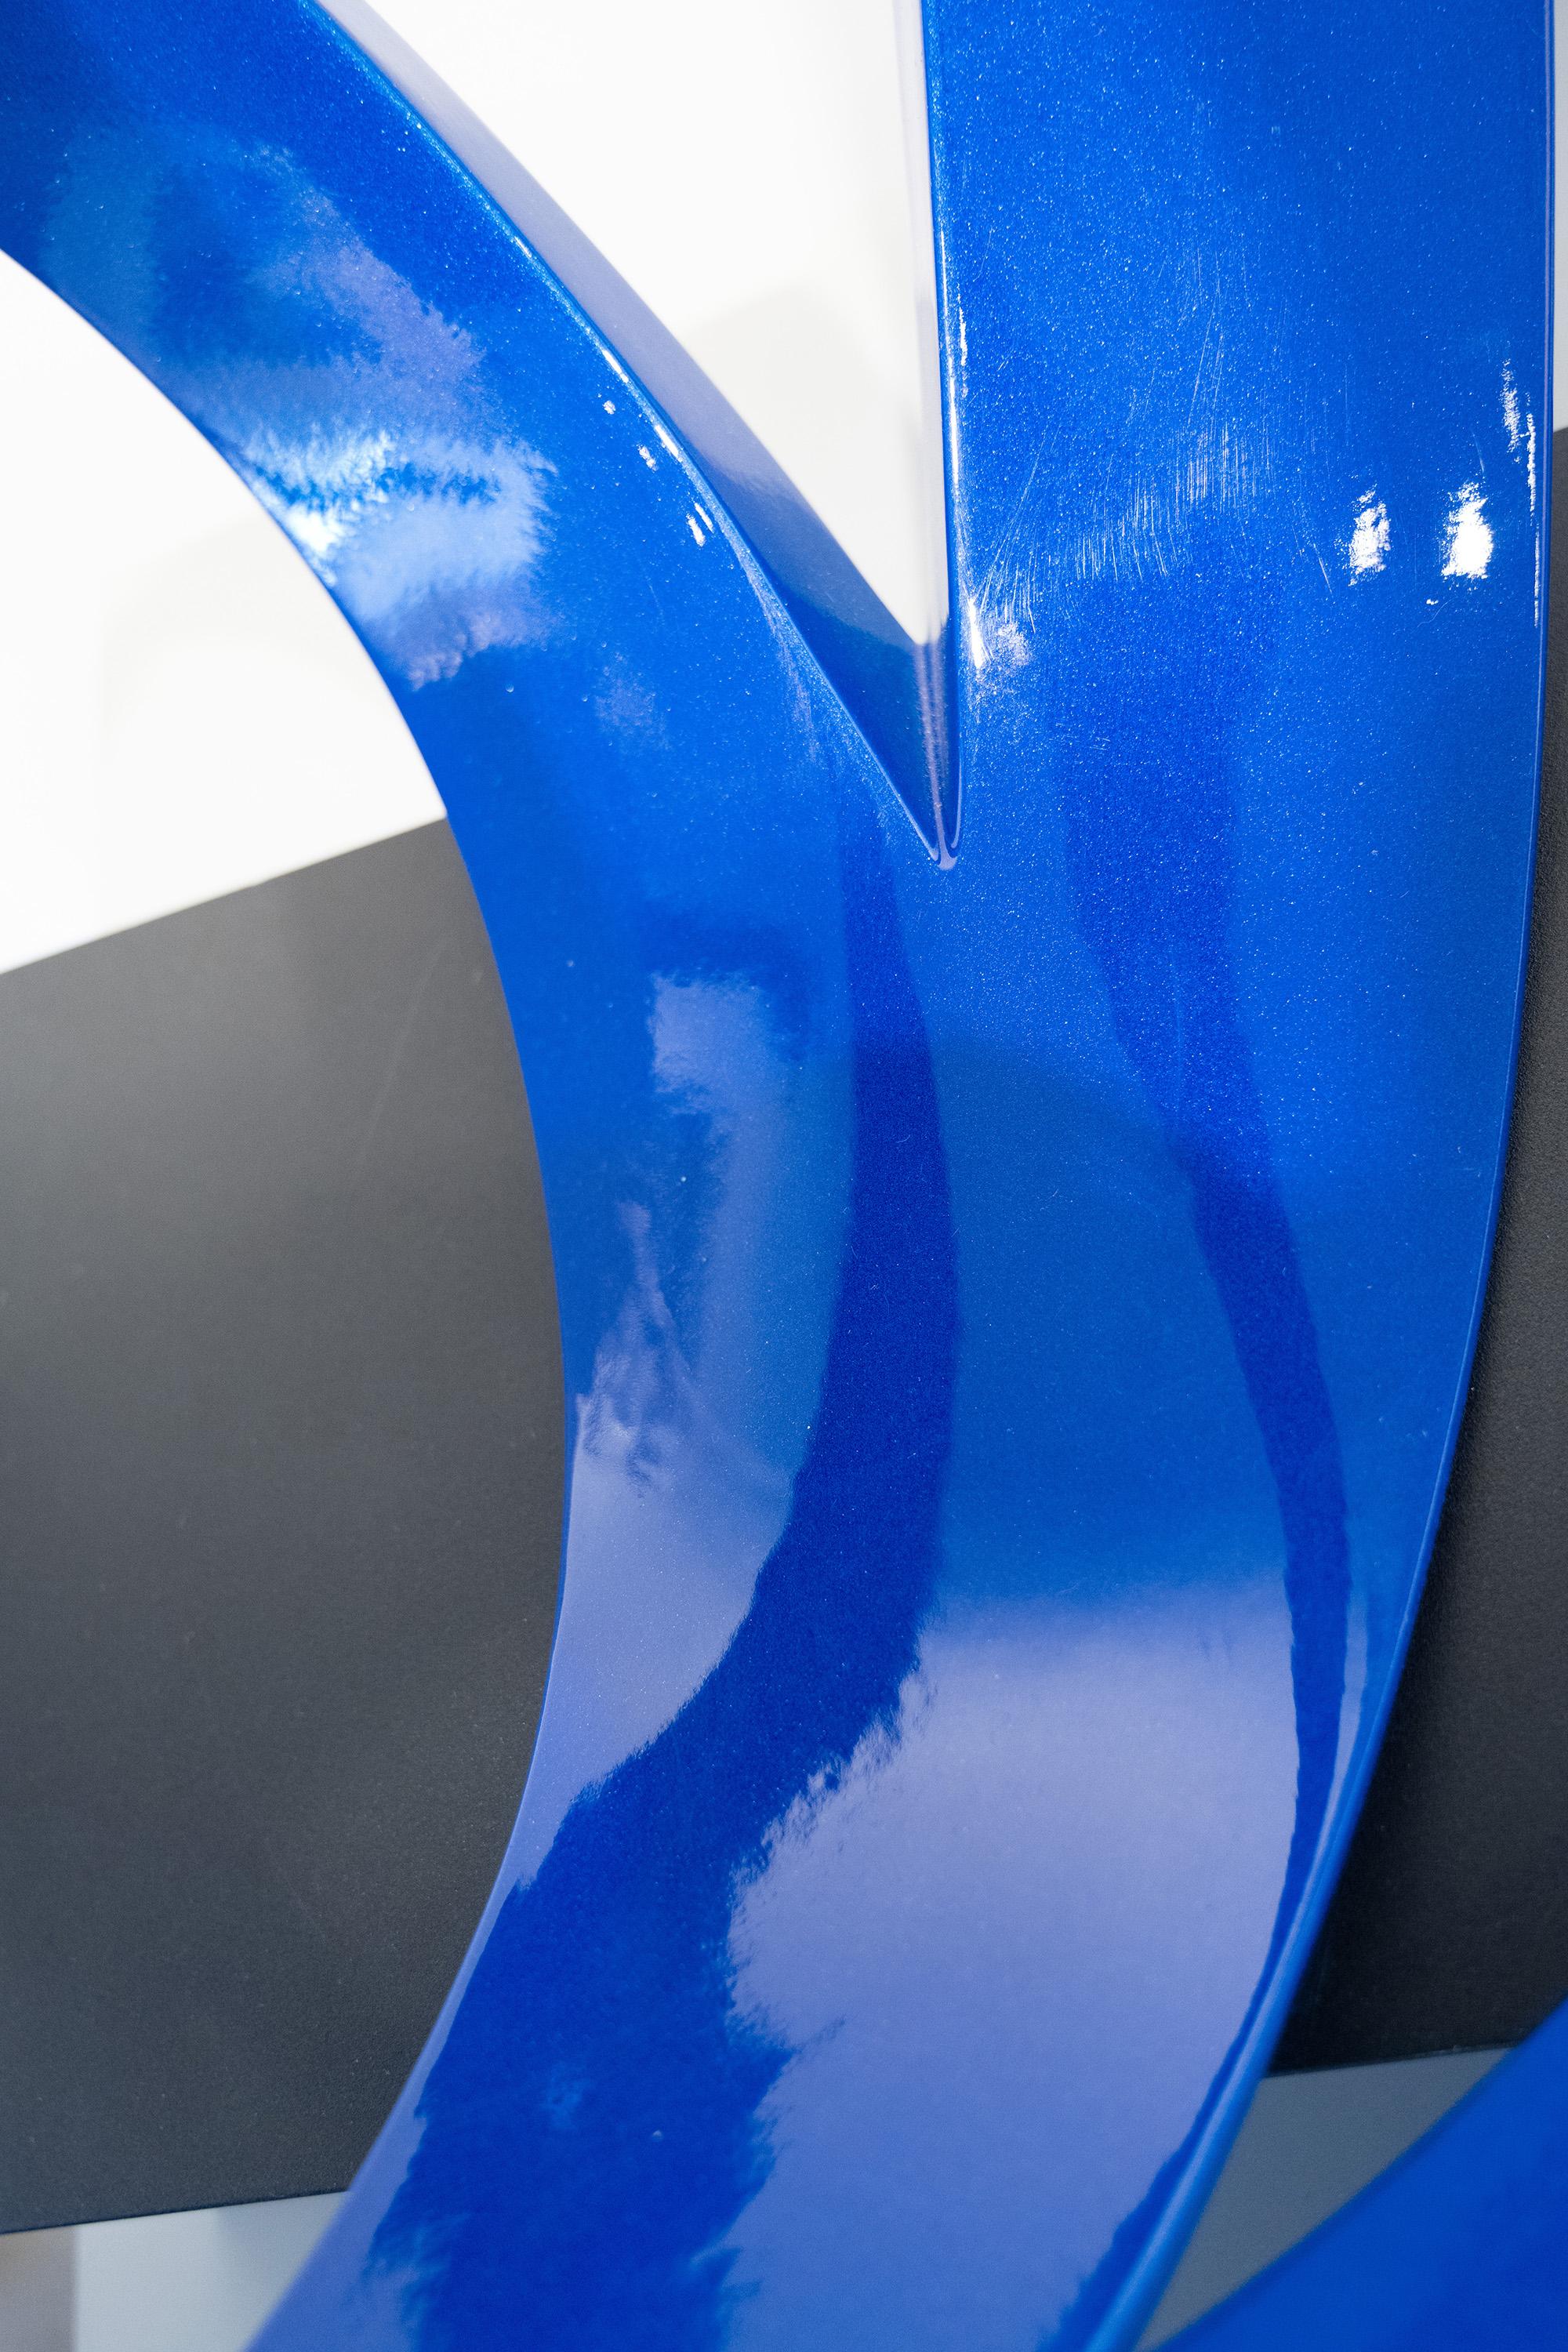 pulverbeschichtetes blau irisierendes Finish, Oberfläche mit leichten Mängeln
handgefertigte Bronze, Sockel aus pulverbeschichtetem Stahl
für Außen- oder Innenaufstellung

Grundfläche 17 x 9 x 3h